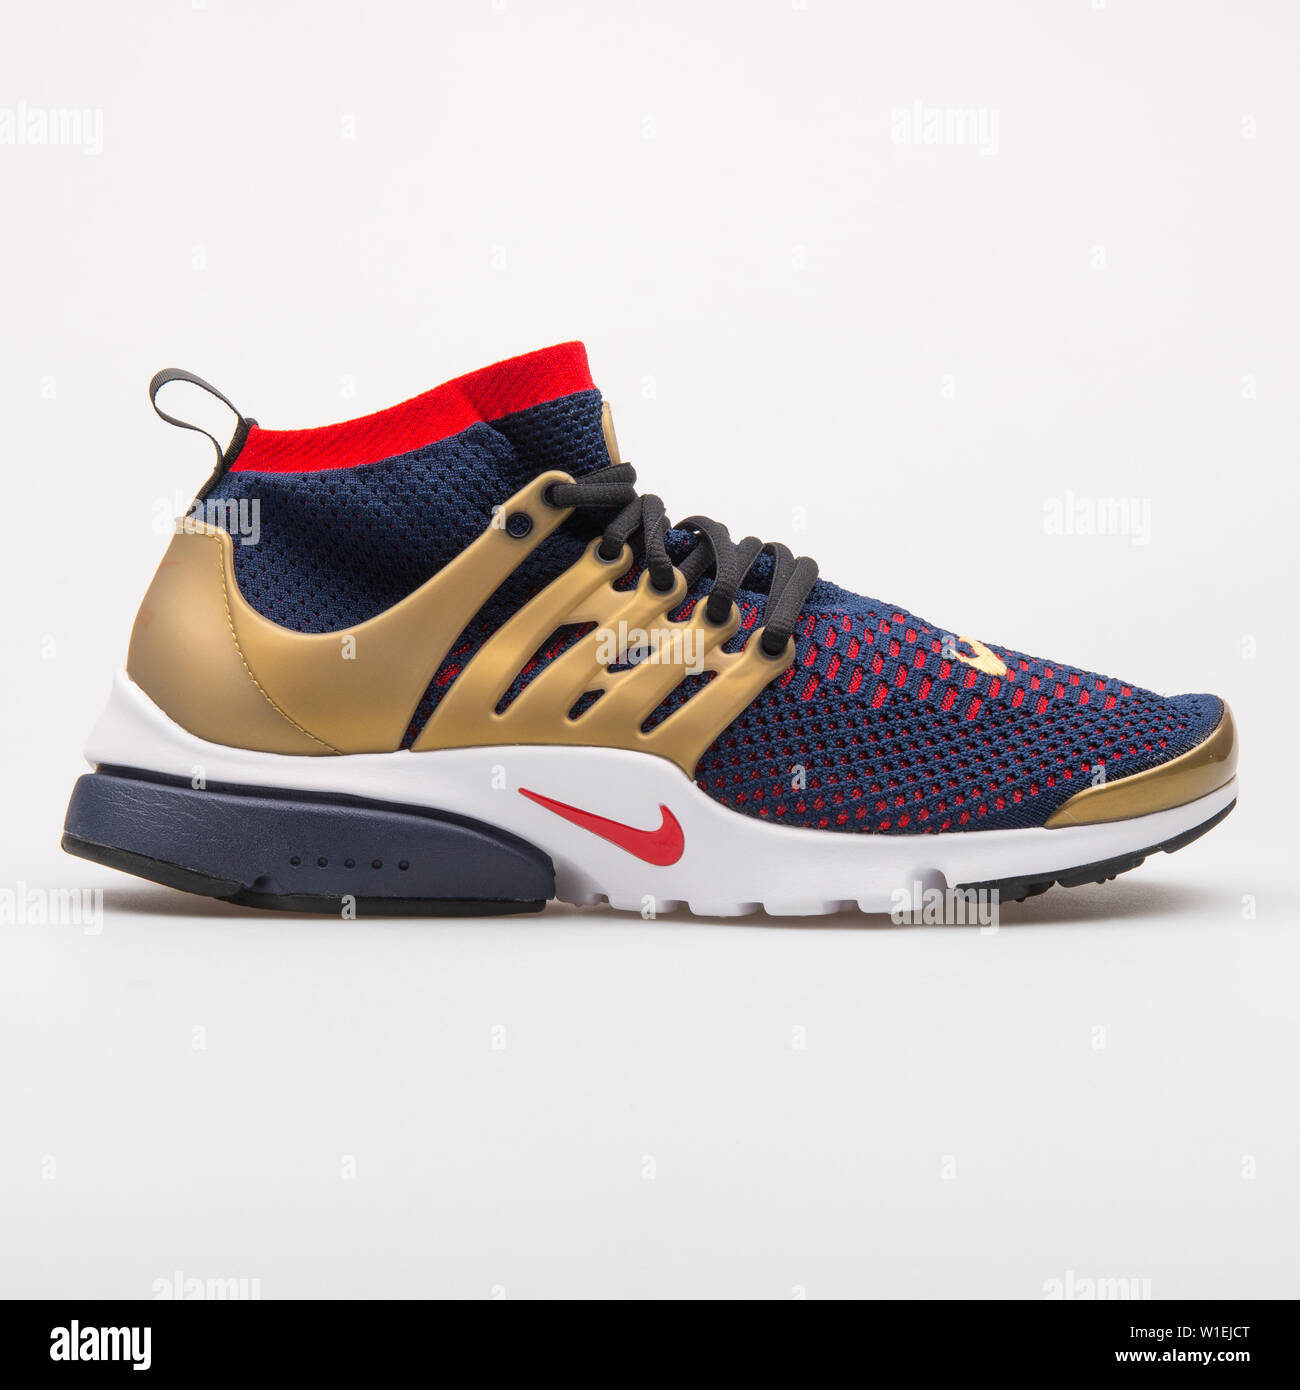 Wien, Österreich - 23 August 2017: Nike Air Presto Flyknit Ultra Blau, Rot  und Gold Sneaker auf weißem Hintergrund Stockfotografie - Alamy